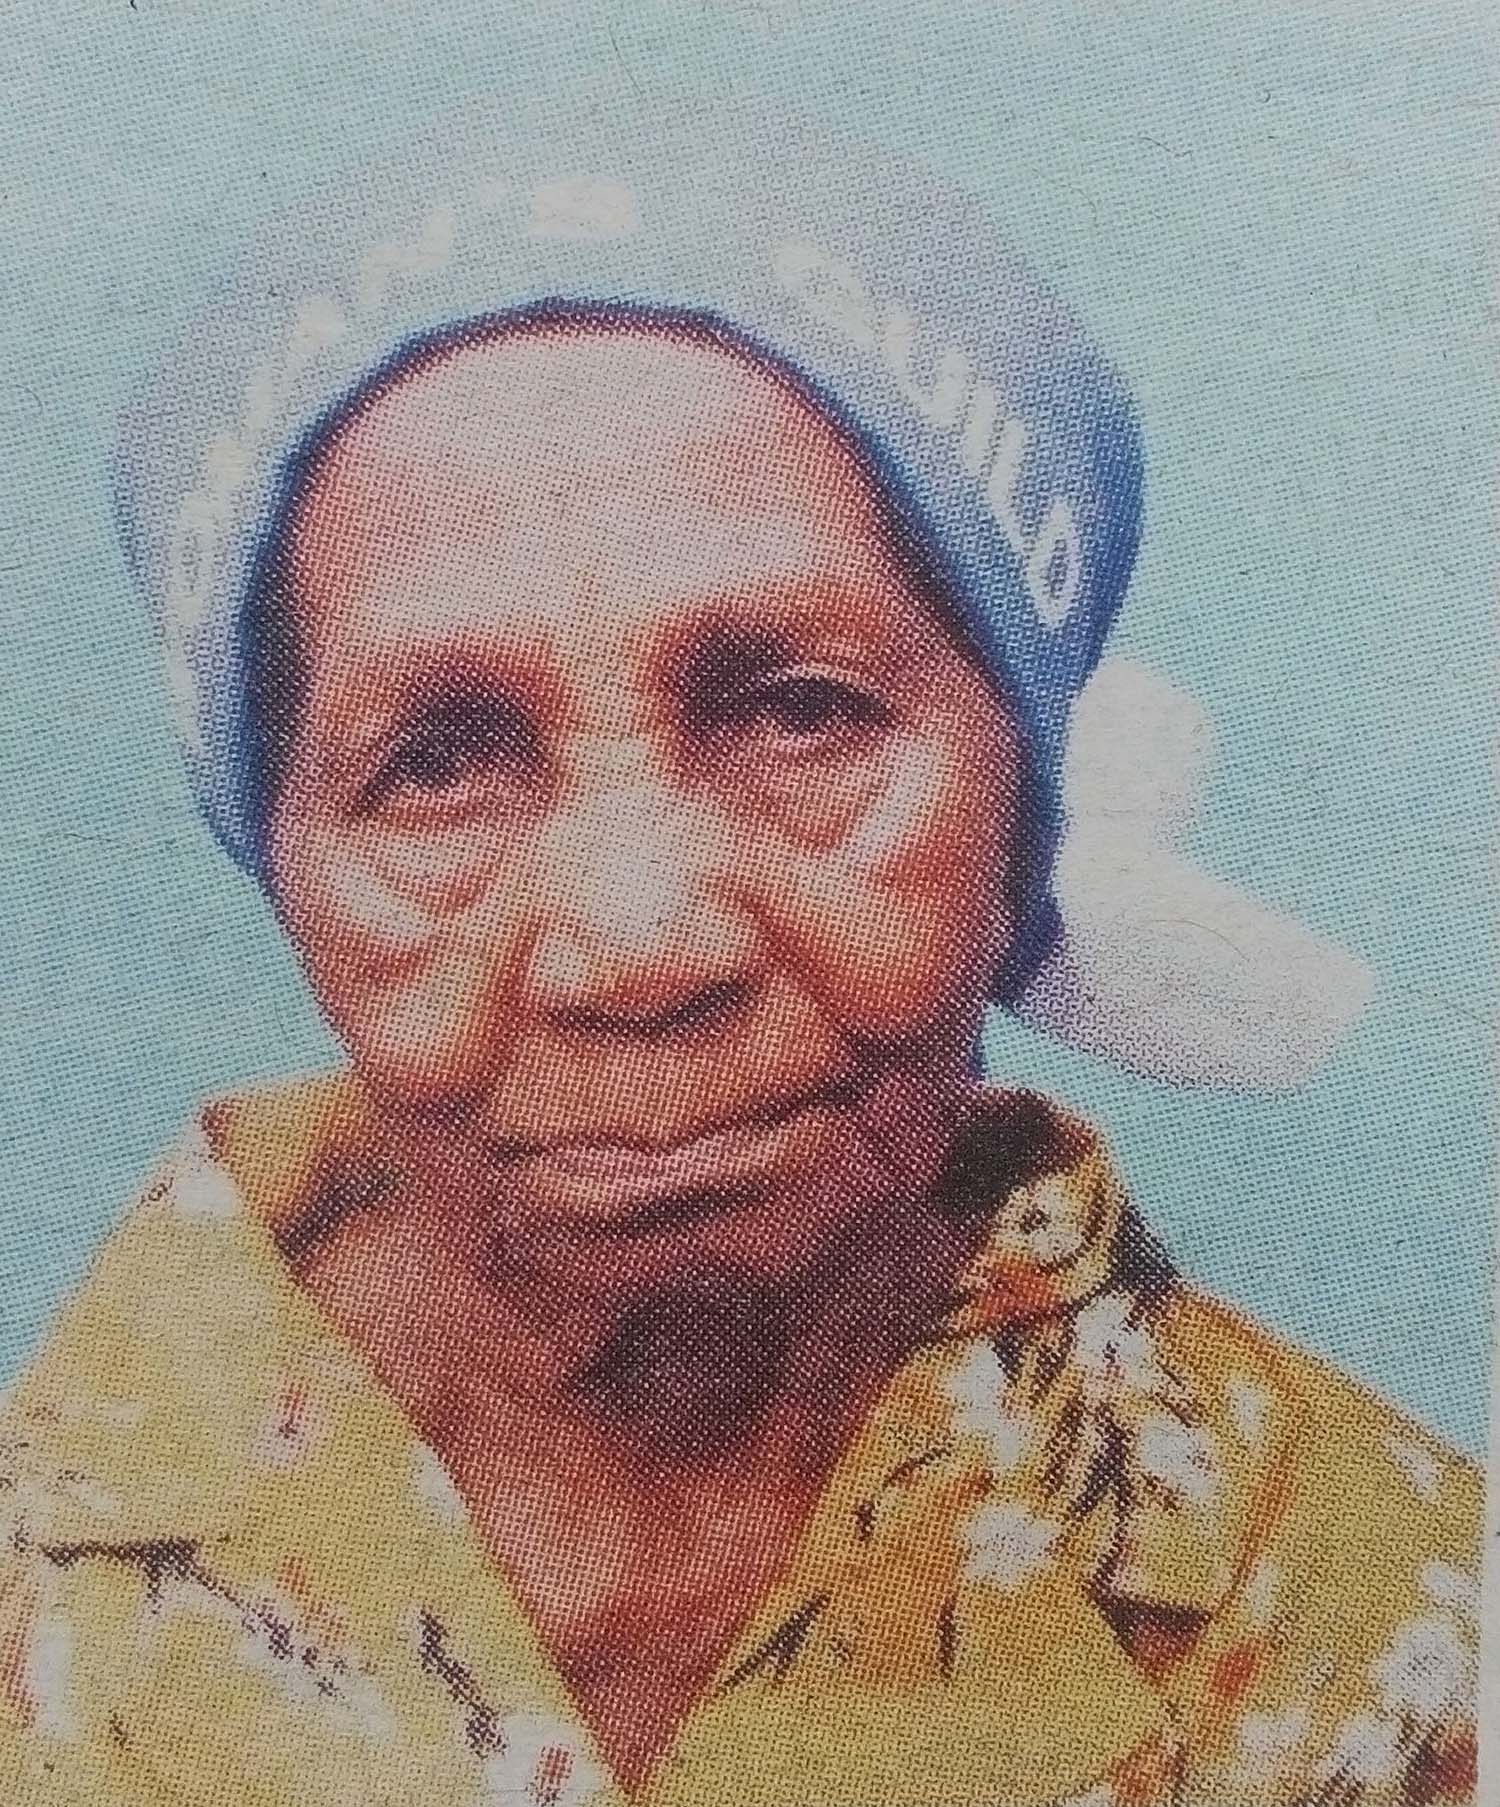 Obituary Image of Elder Mrs. Ngubia Wanyutu